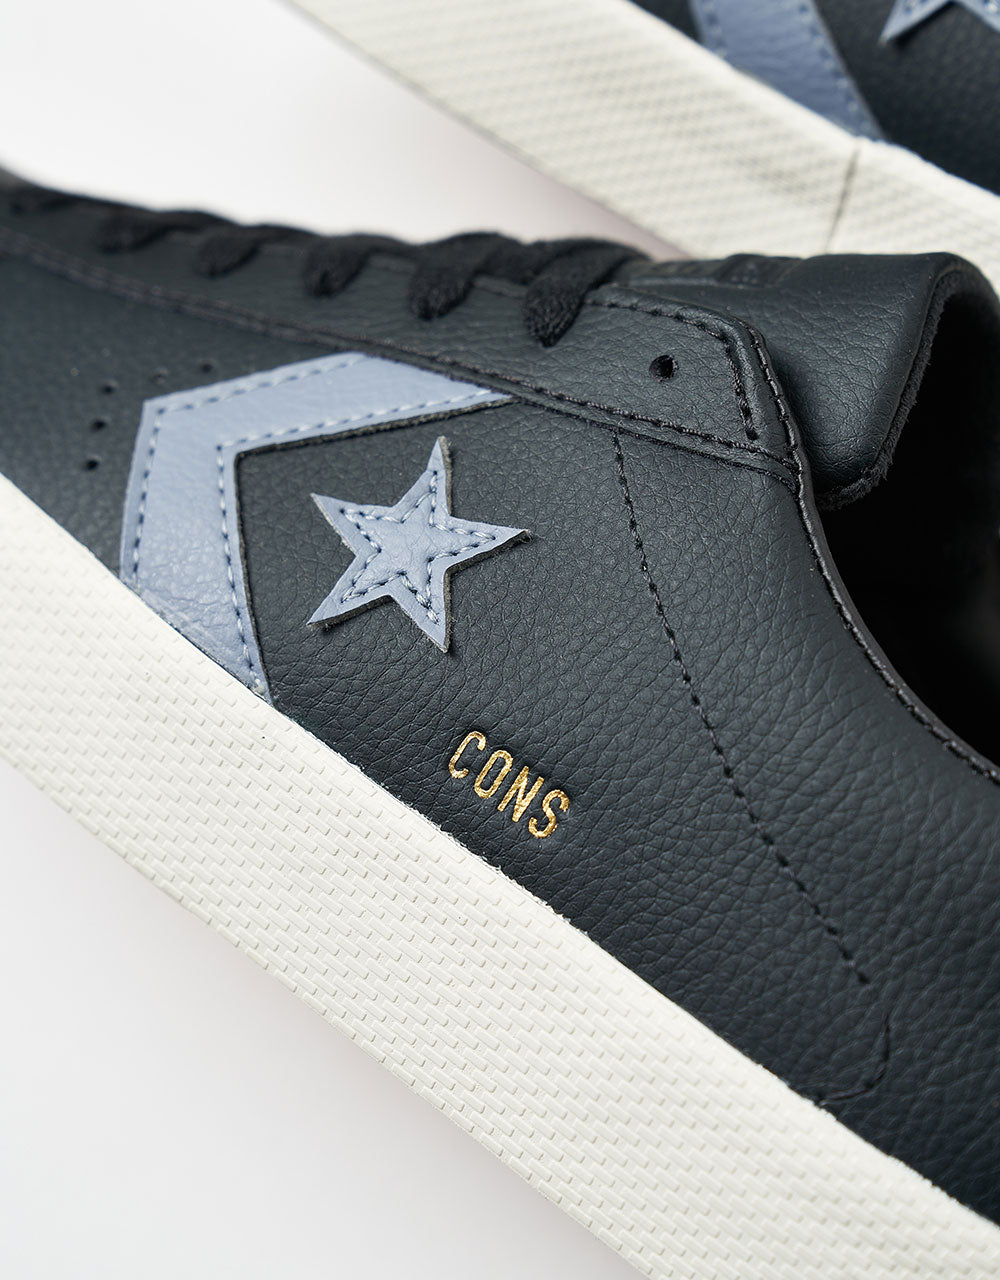 Converse PL Vulc Pro Skate Shoes - Black/Lunar Grey/Egret